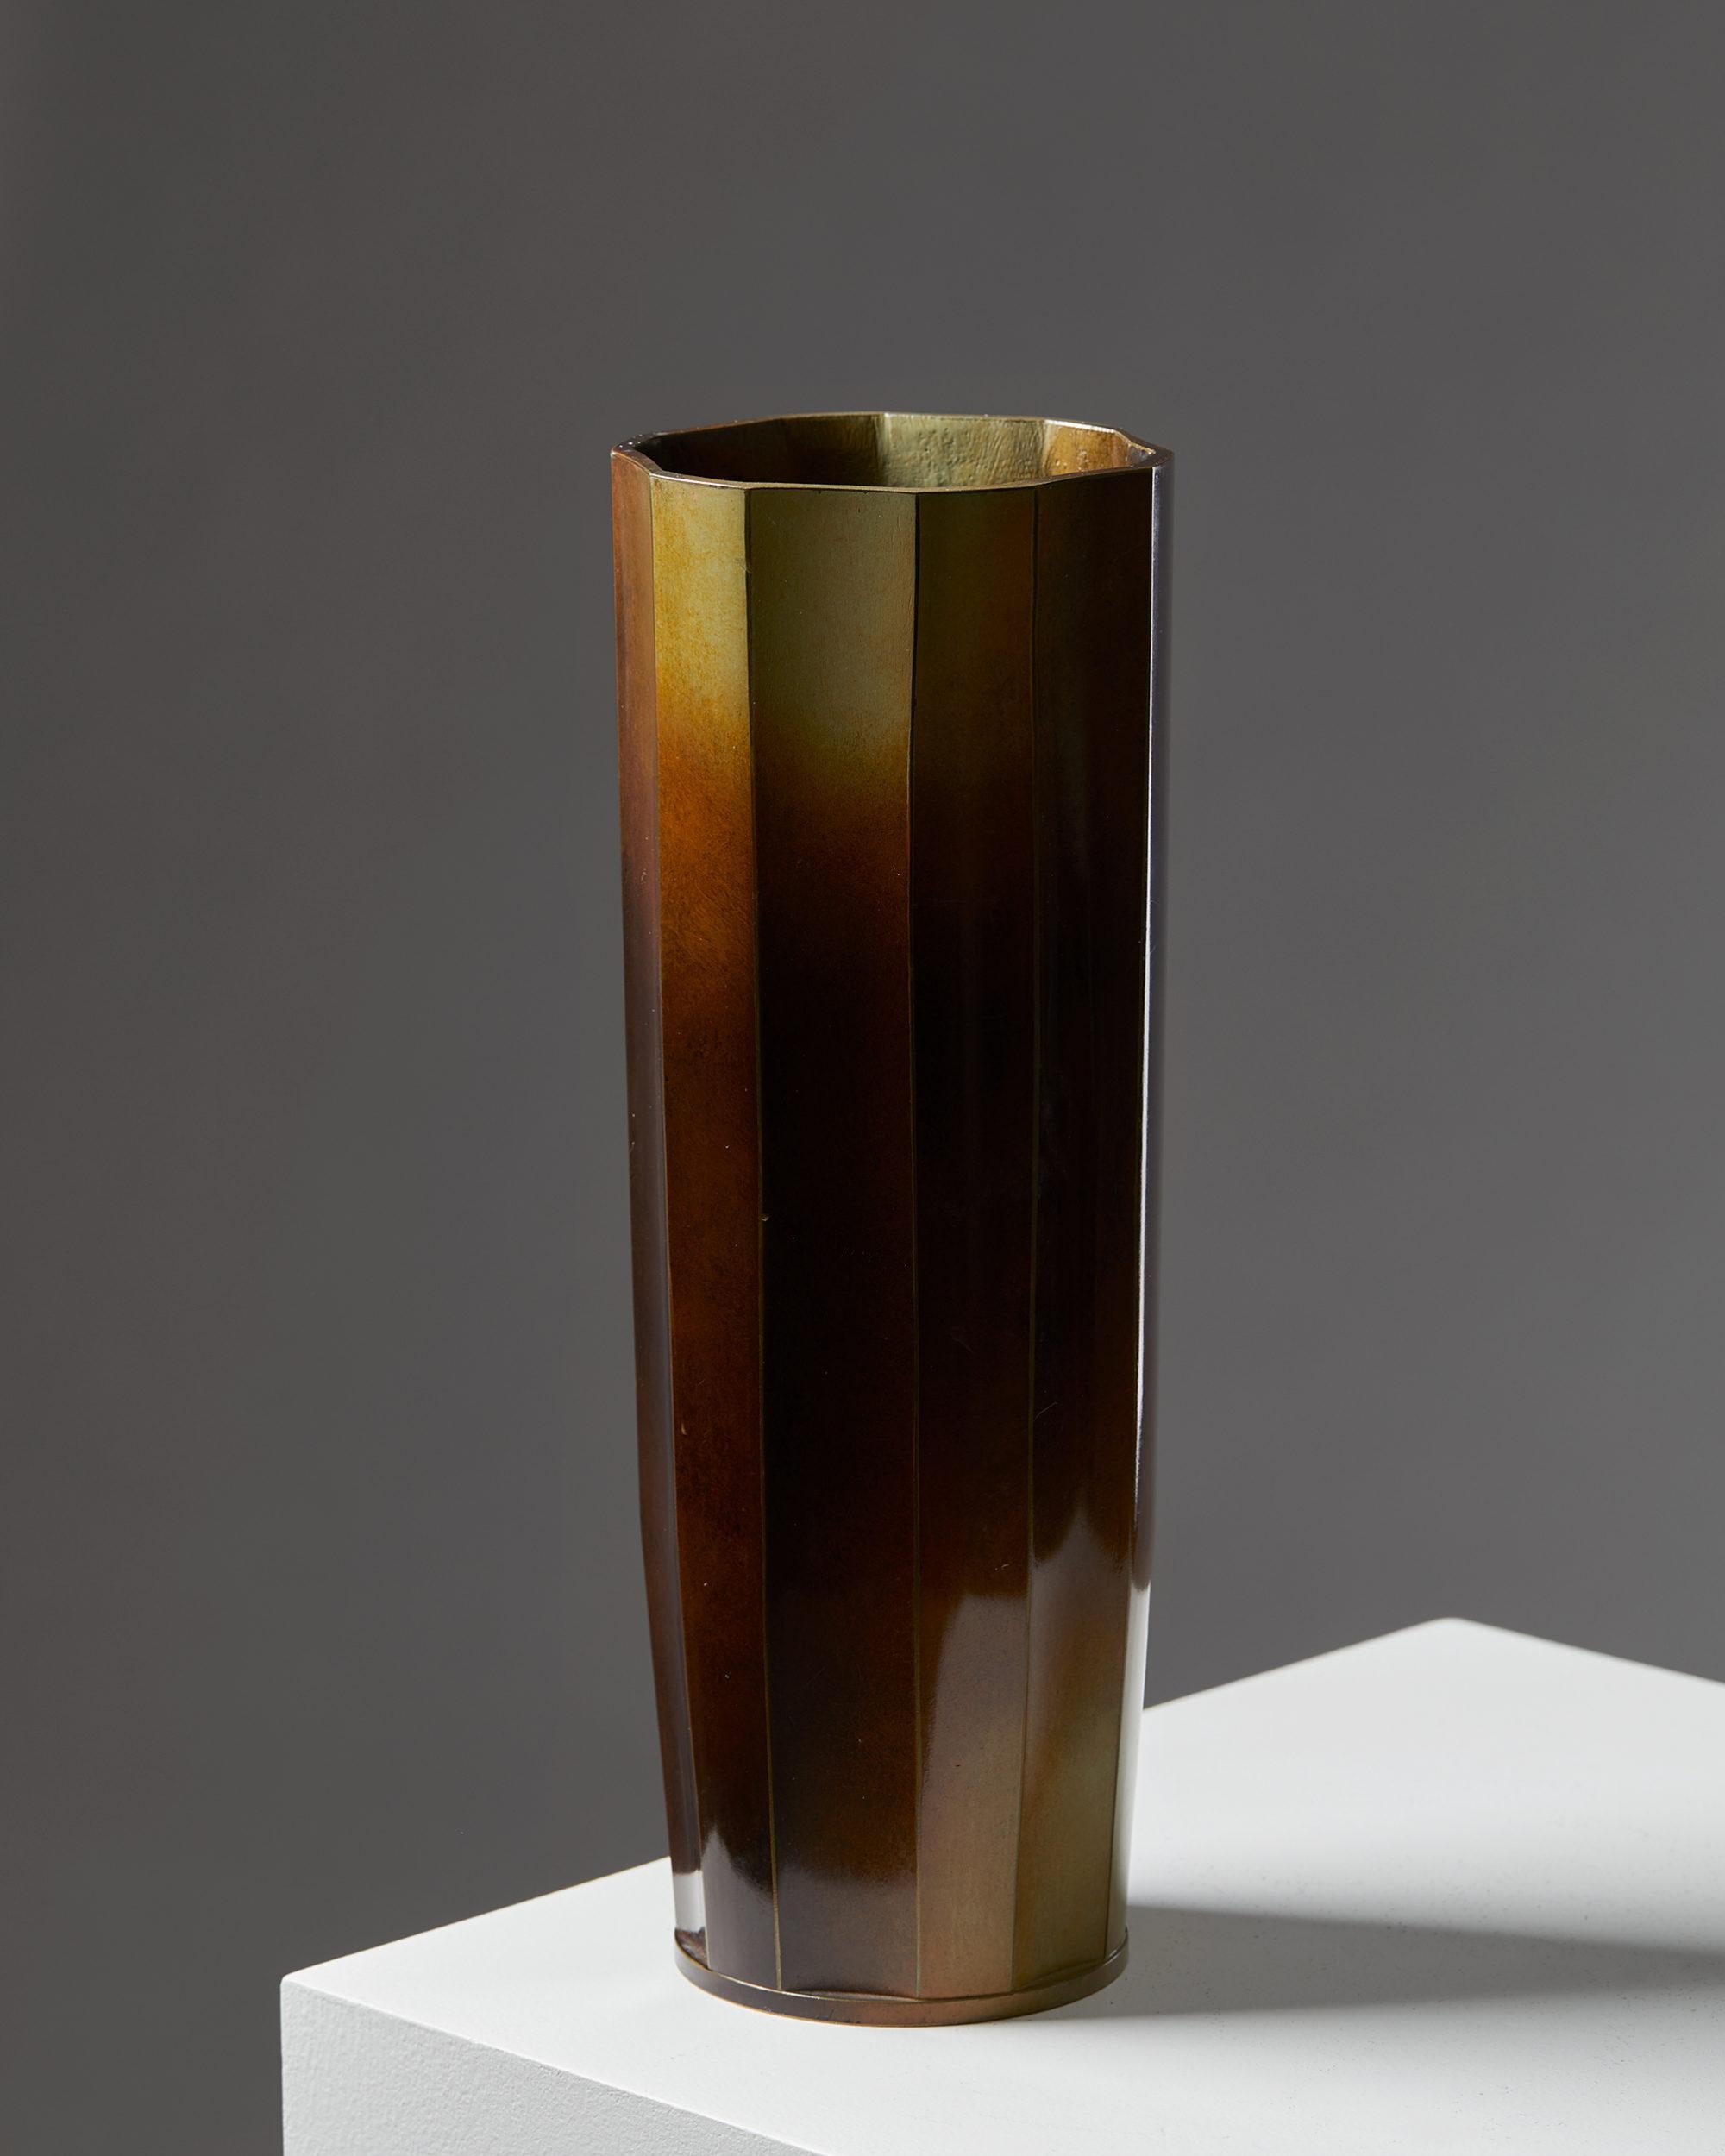 Vase designed by Ivar Ålenius-Björk for Ystad Brons, Sweden, 1930s.
Patinated bronze.

Measures: Height 32 cm/ 12 1/4